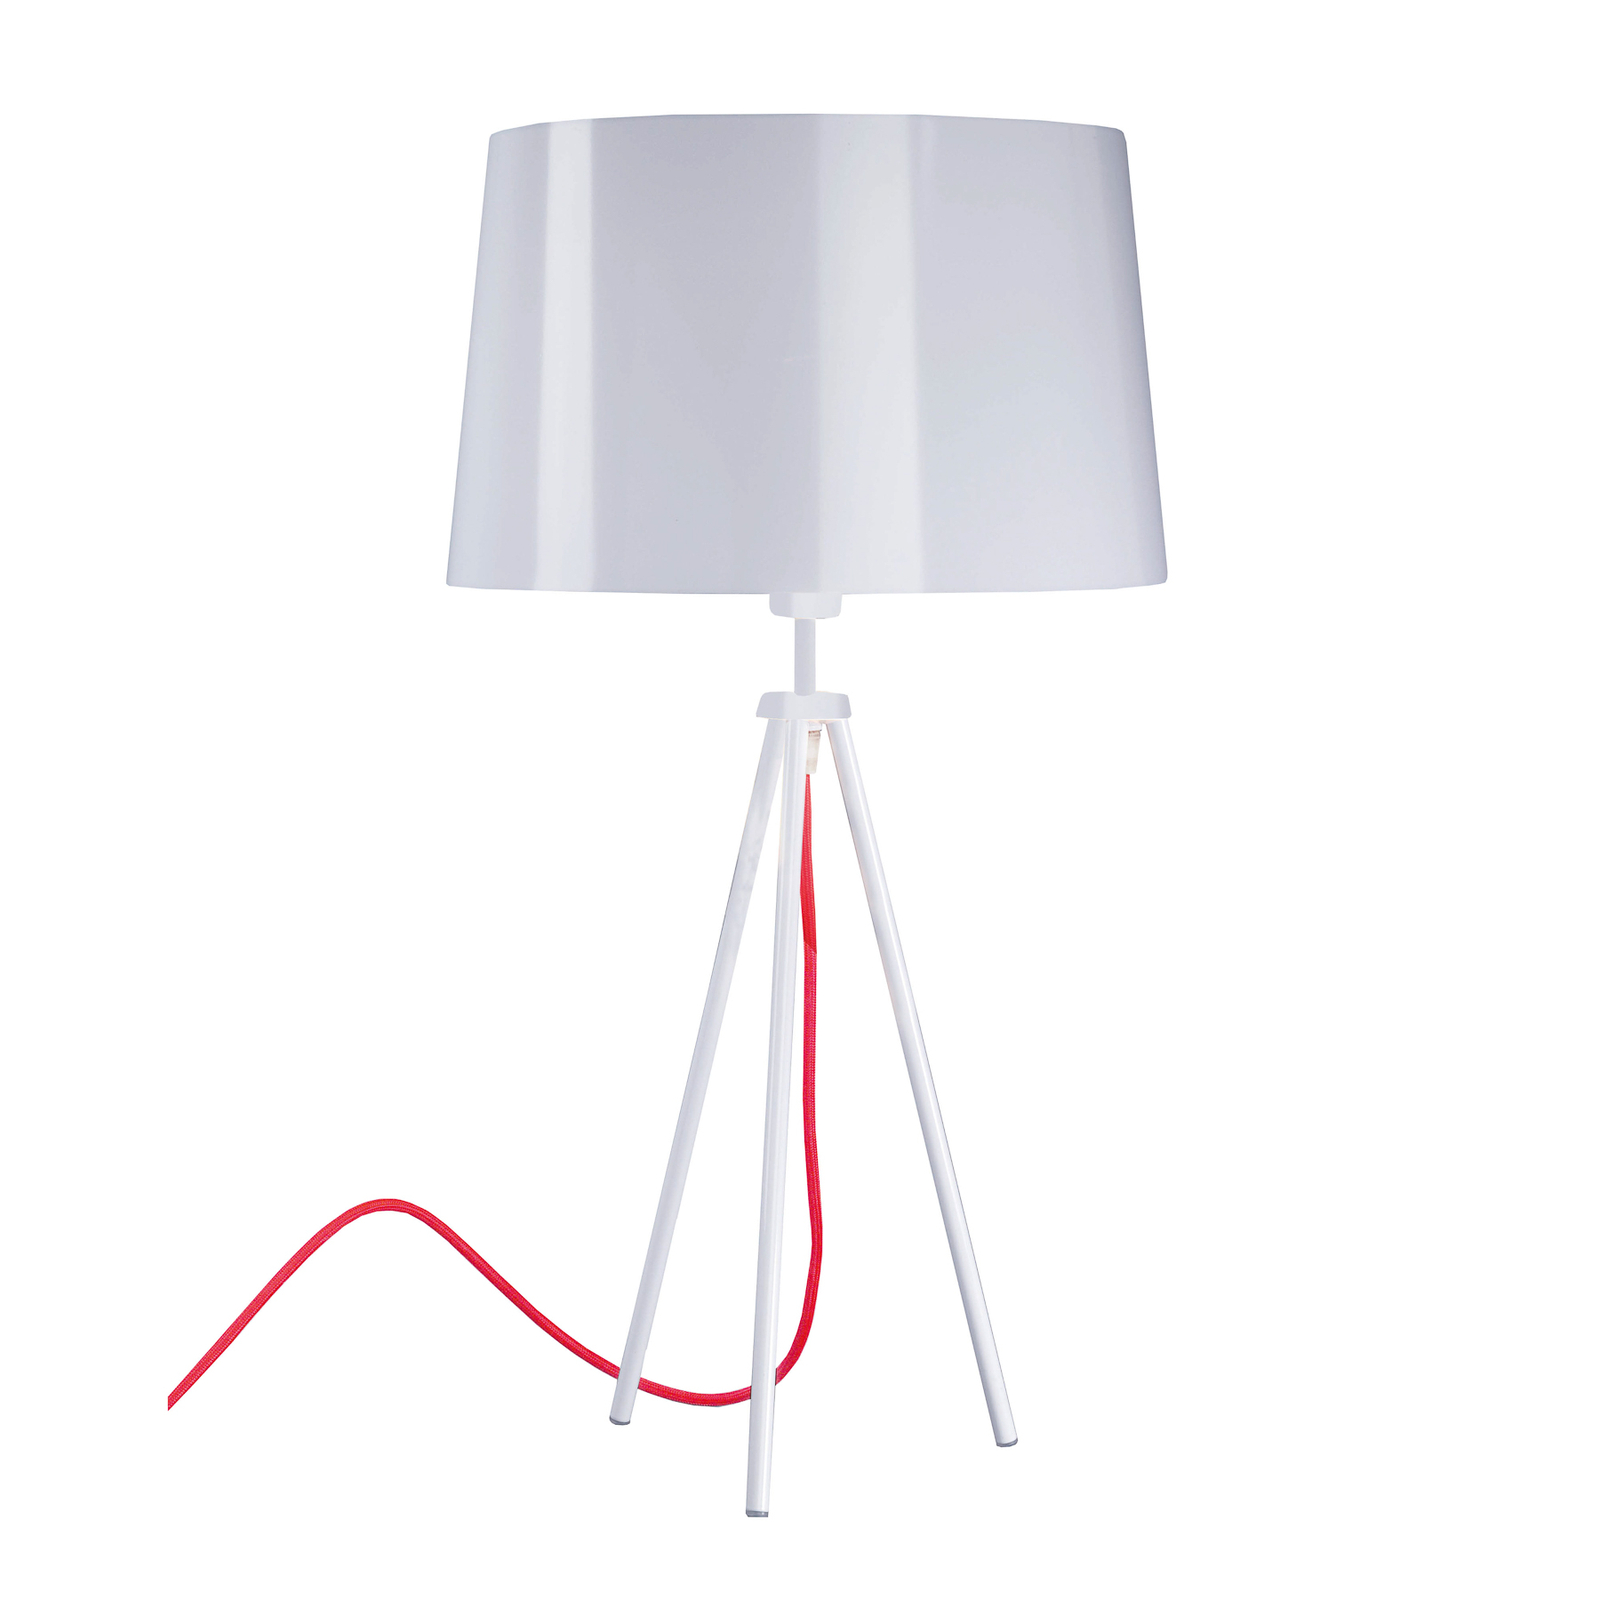 Aluminor Tropic stolní lampa bílá, kabel červený